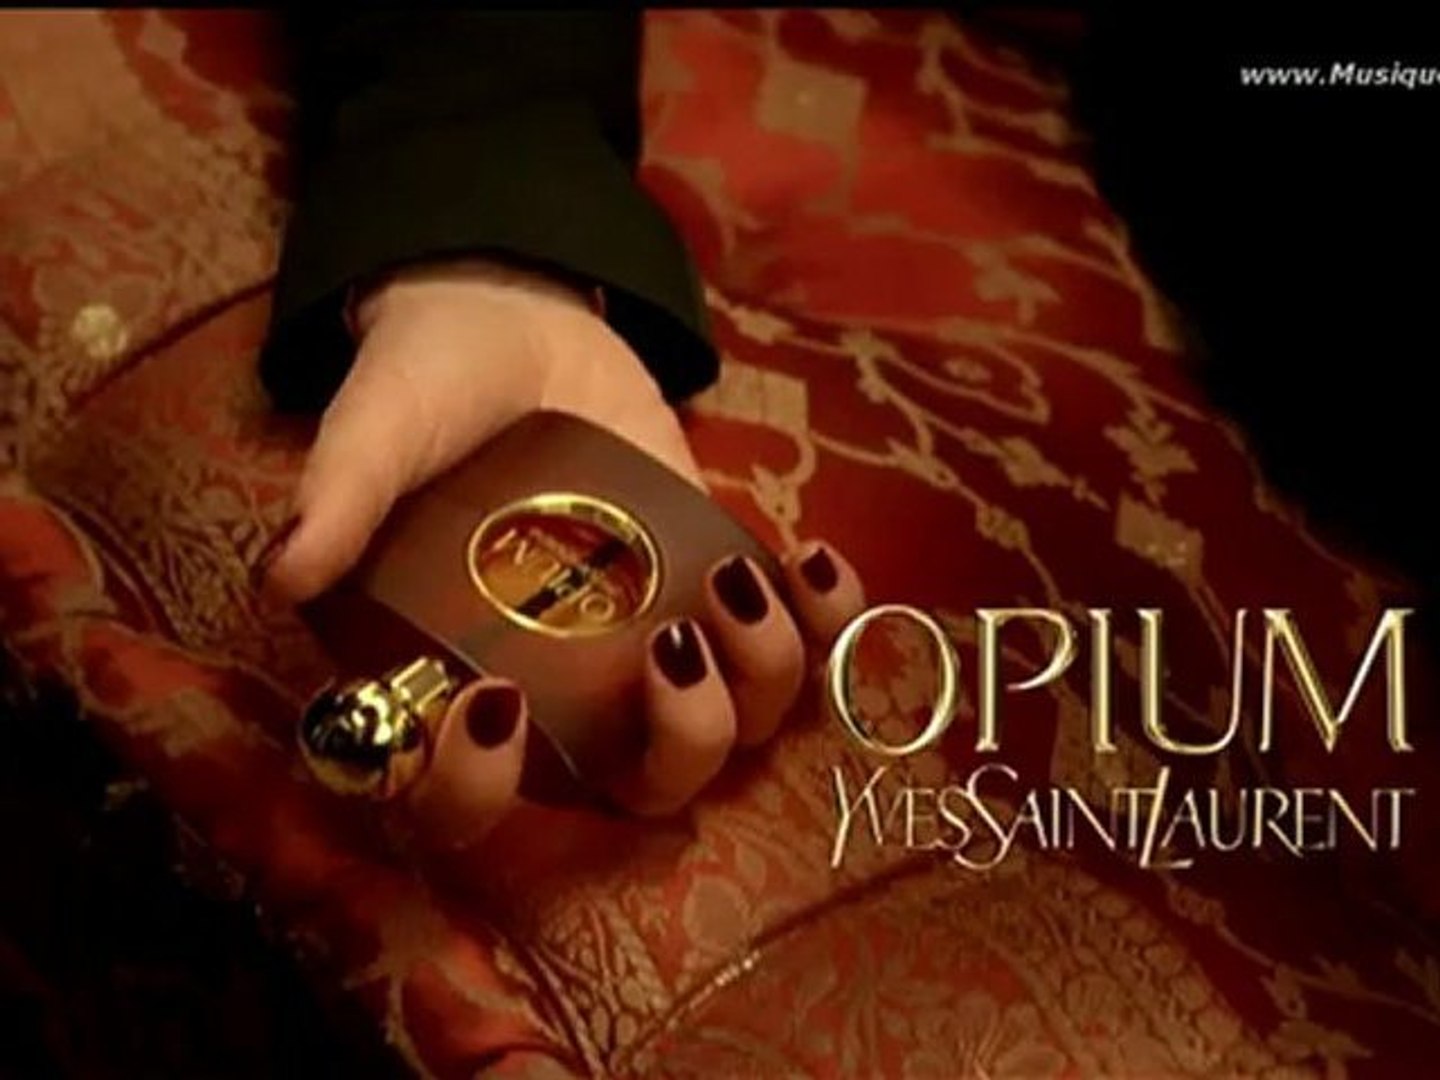 pub Opium Vapeurs de Parfum Yves Saint Laurent 2012 [HQ] - Vidéo Dailymotion